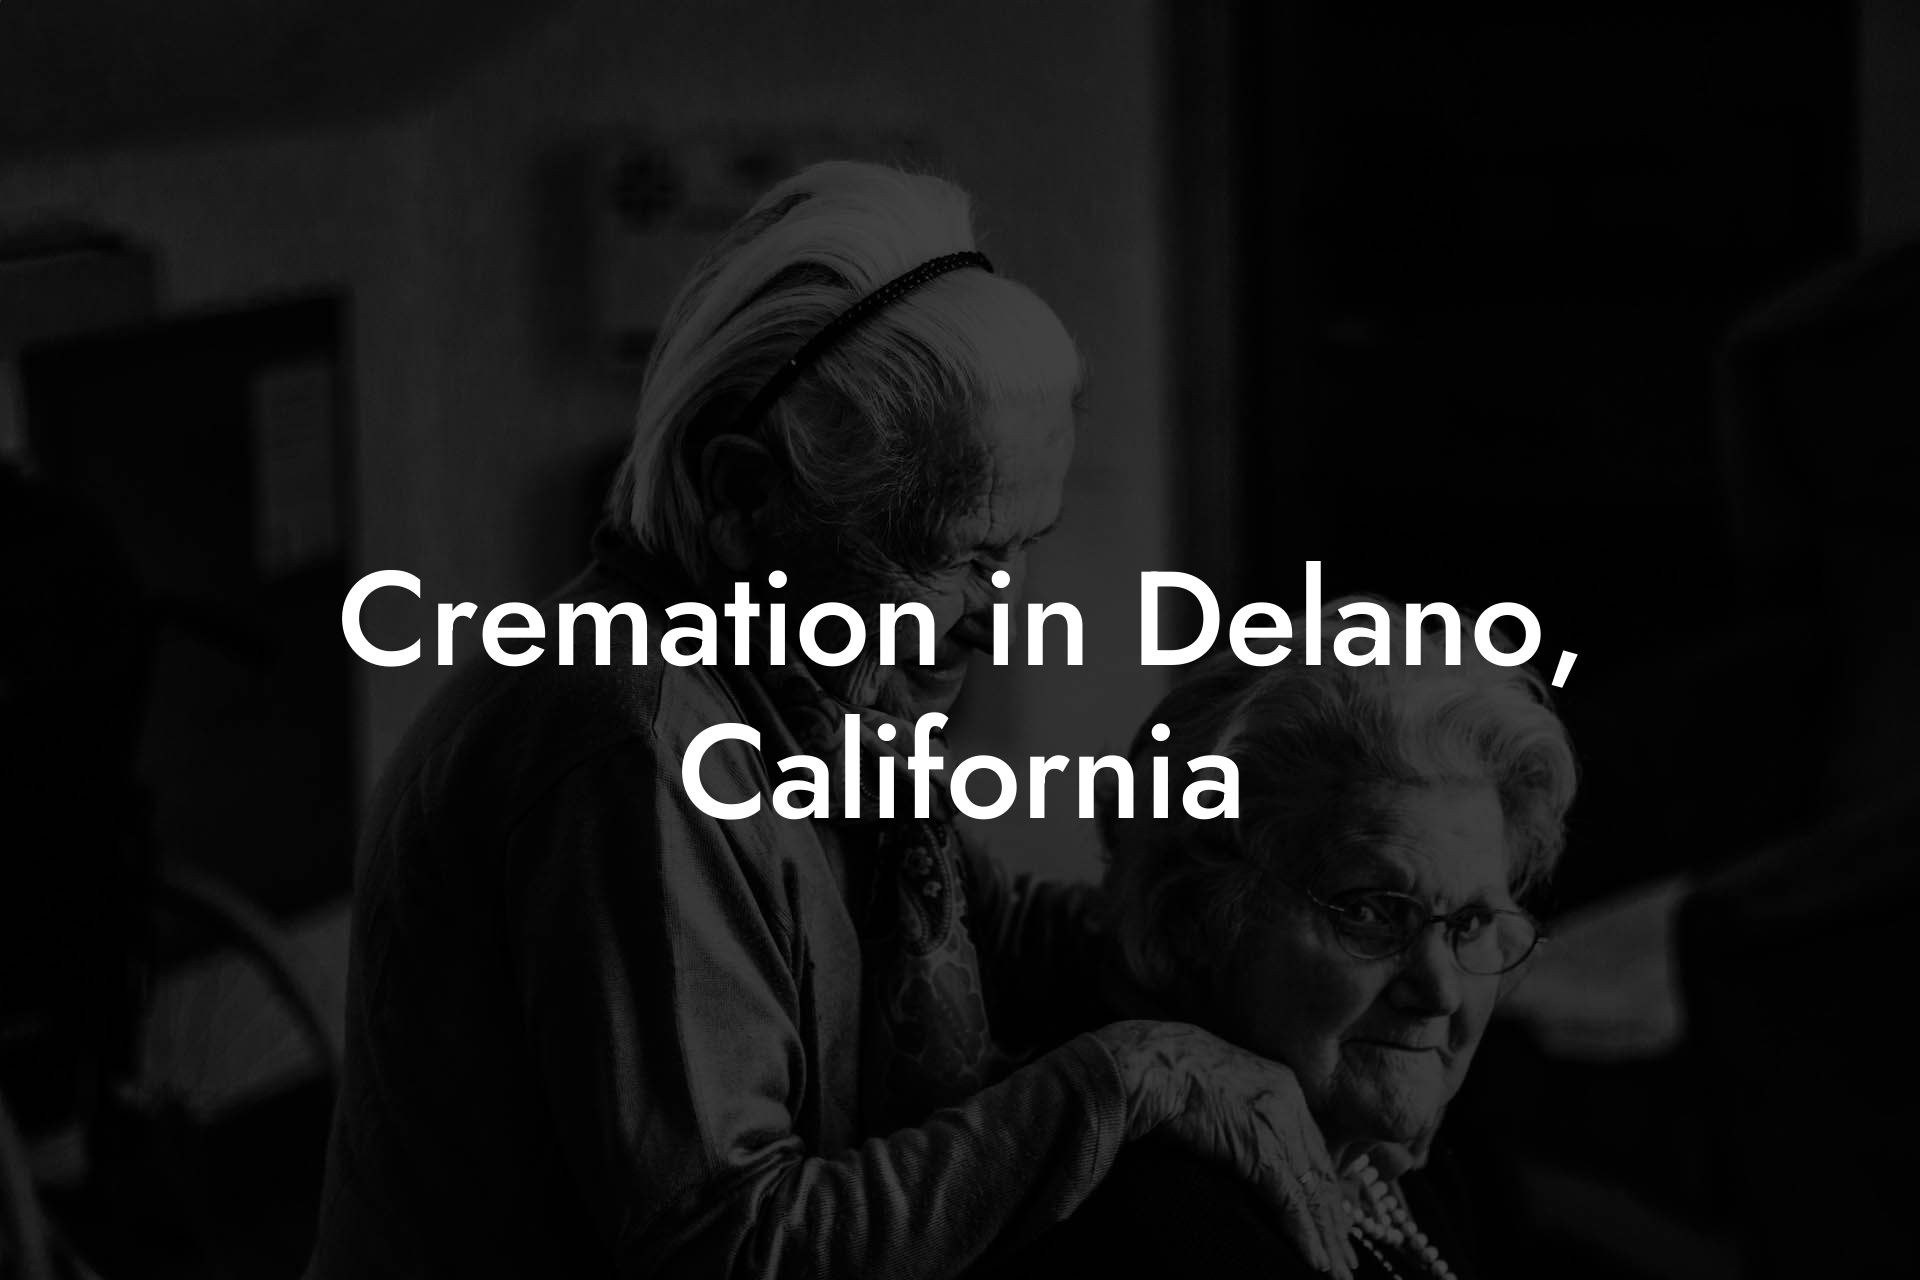 Cremation in Delano, California